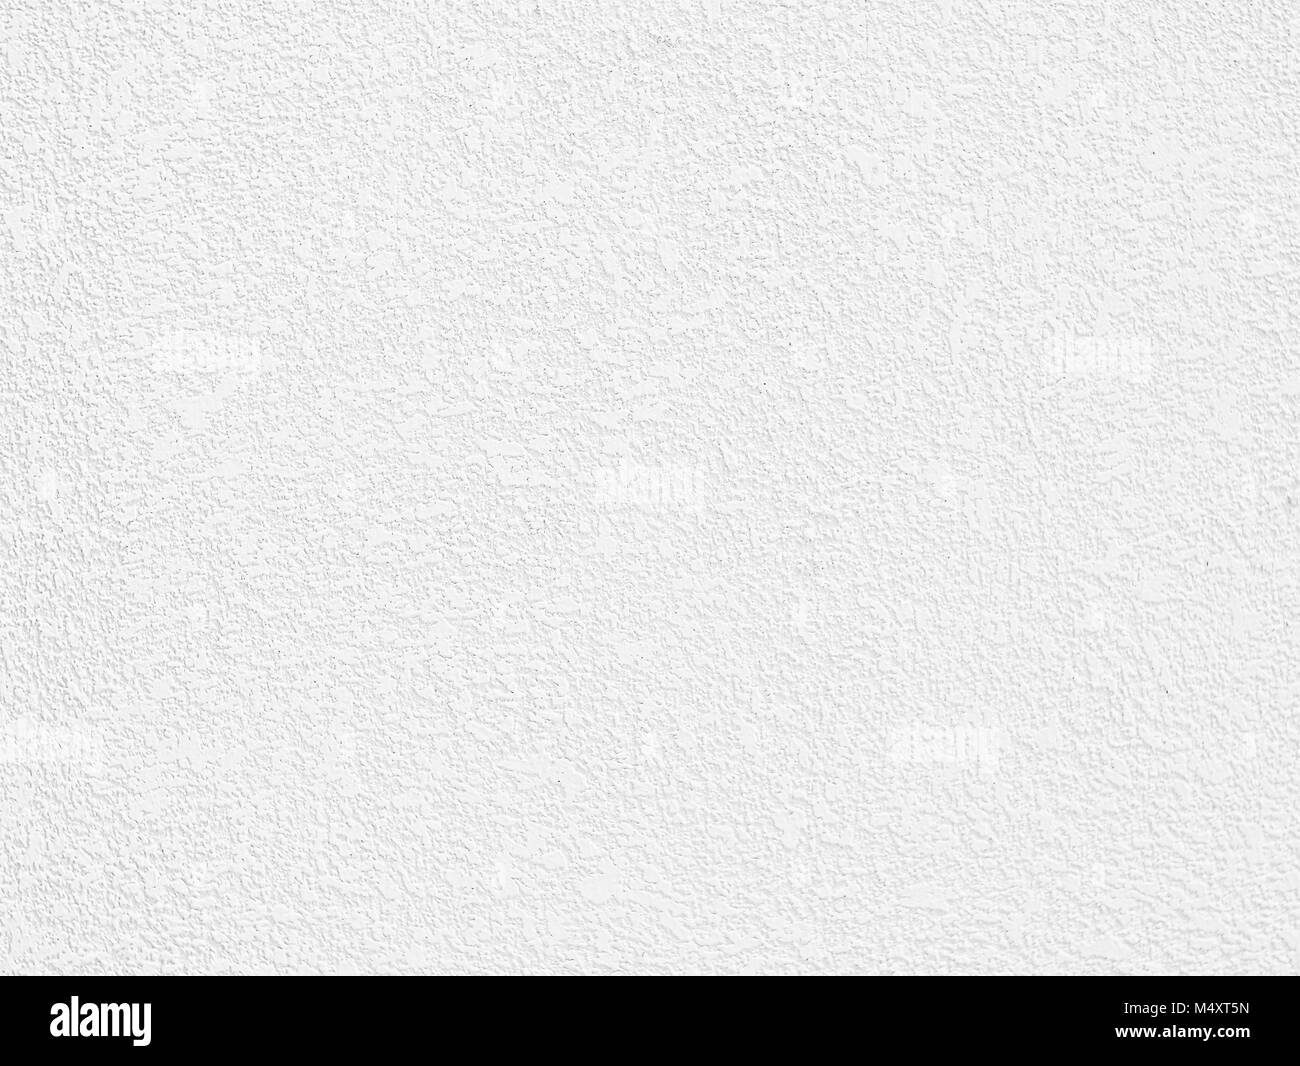 Weißer Beton Wand TextureBackground, Bodenbeläge für Text, Bilder, Websites, Webseiten oder Grafiken für Werbekampagnen. Stockfoto